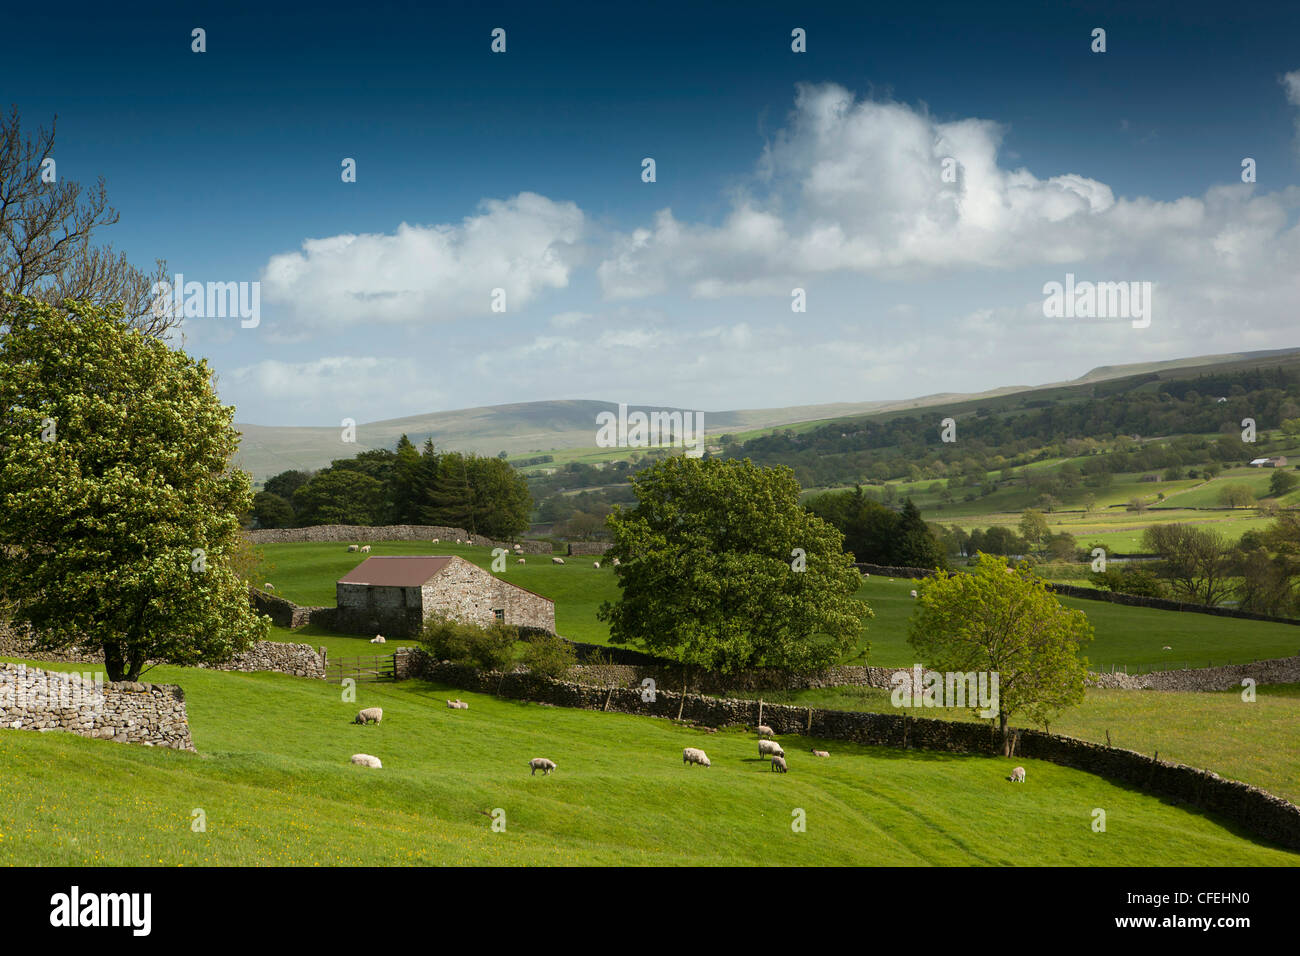 Royaume-uni, Angleterre, dans le Yorkshire, Wensleydale, Askrigg, des moutons paissant près de stone grange sur le terrain Banque D'Images